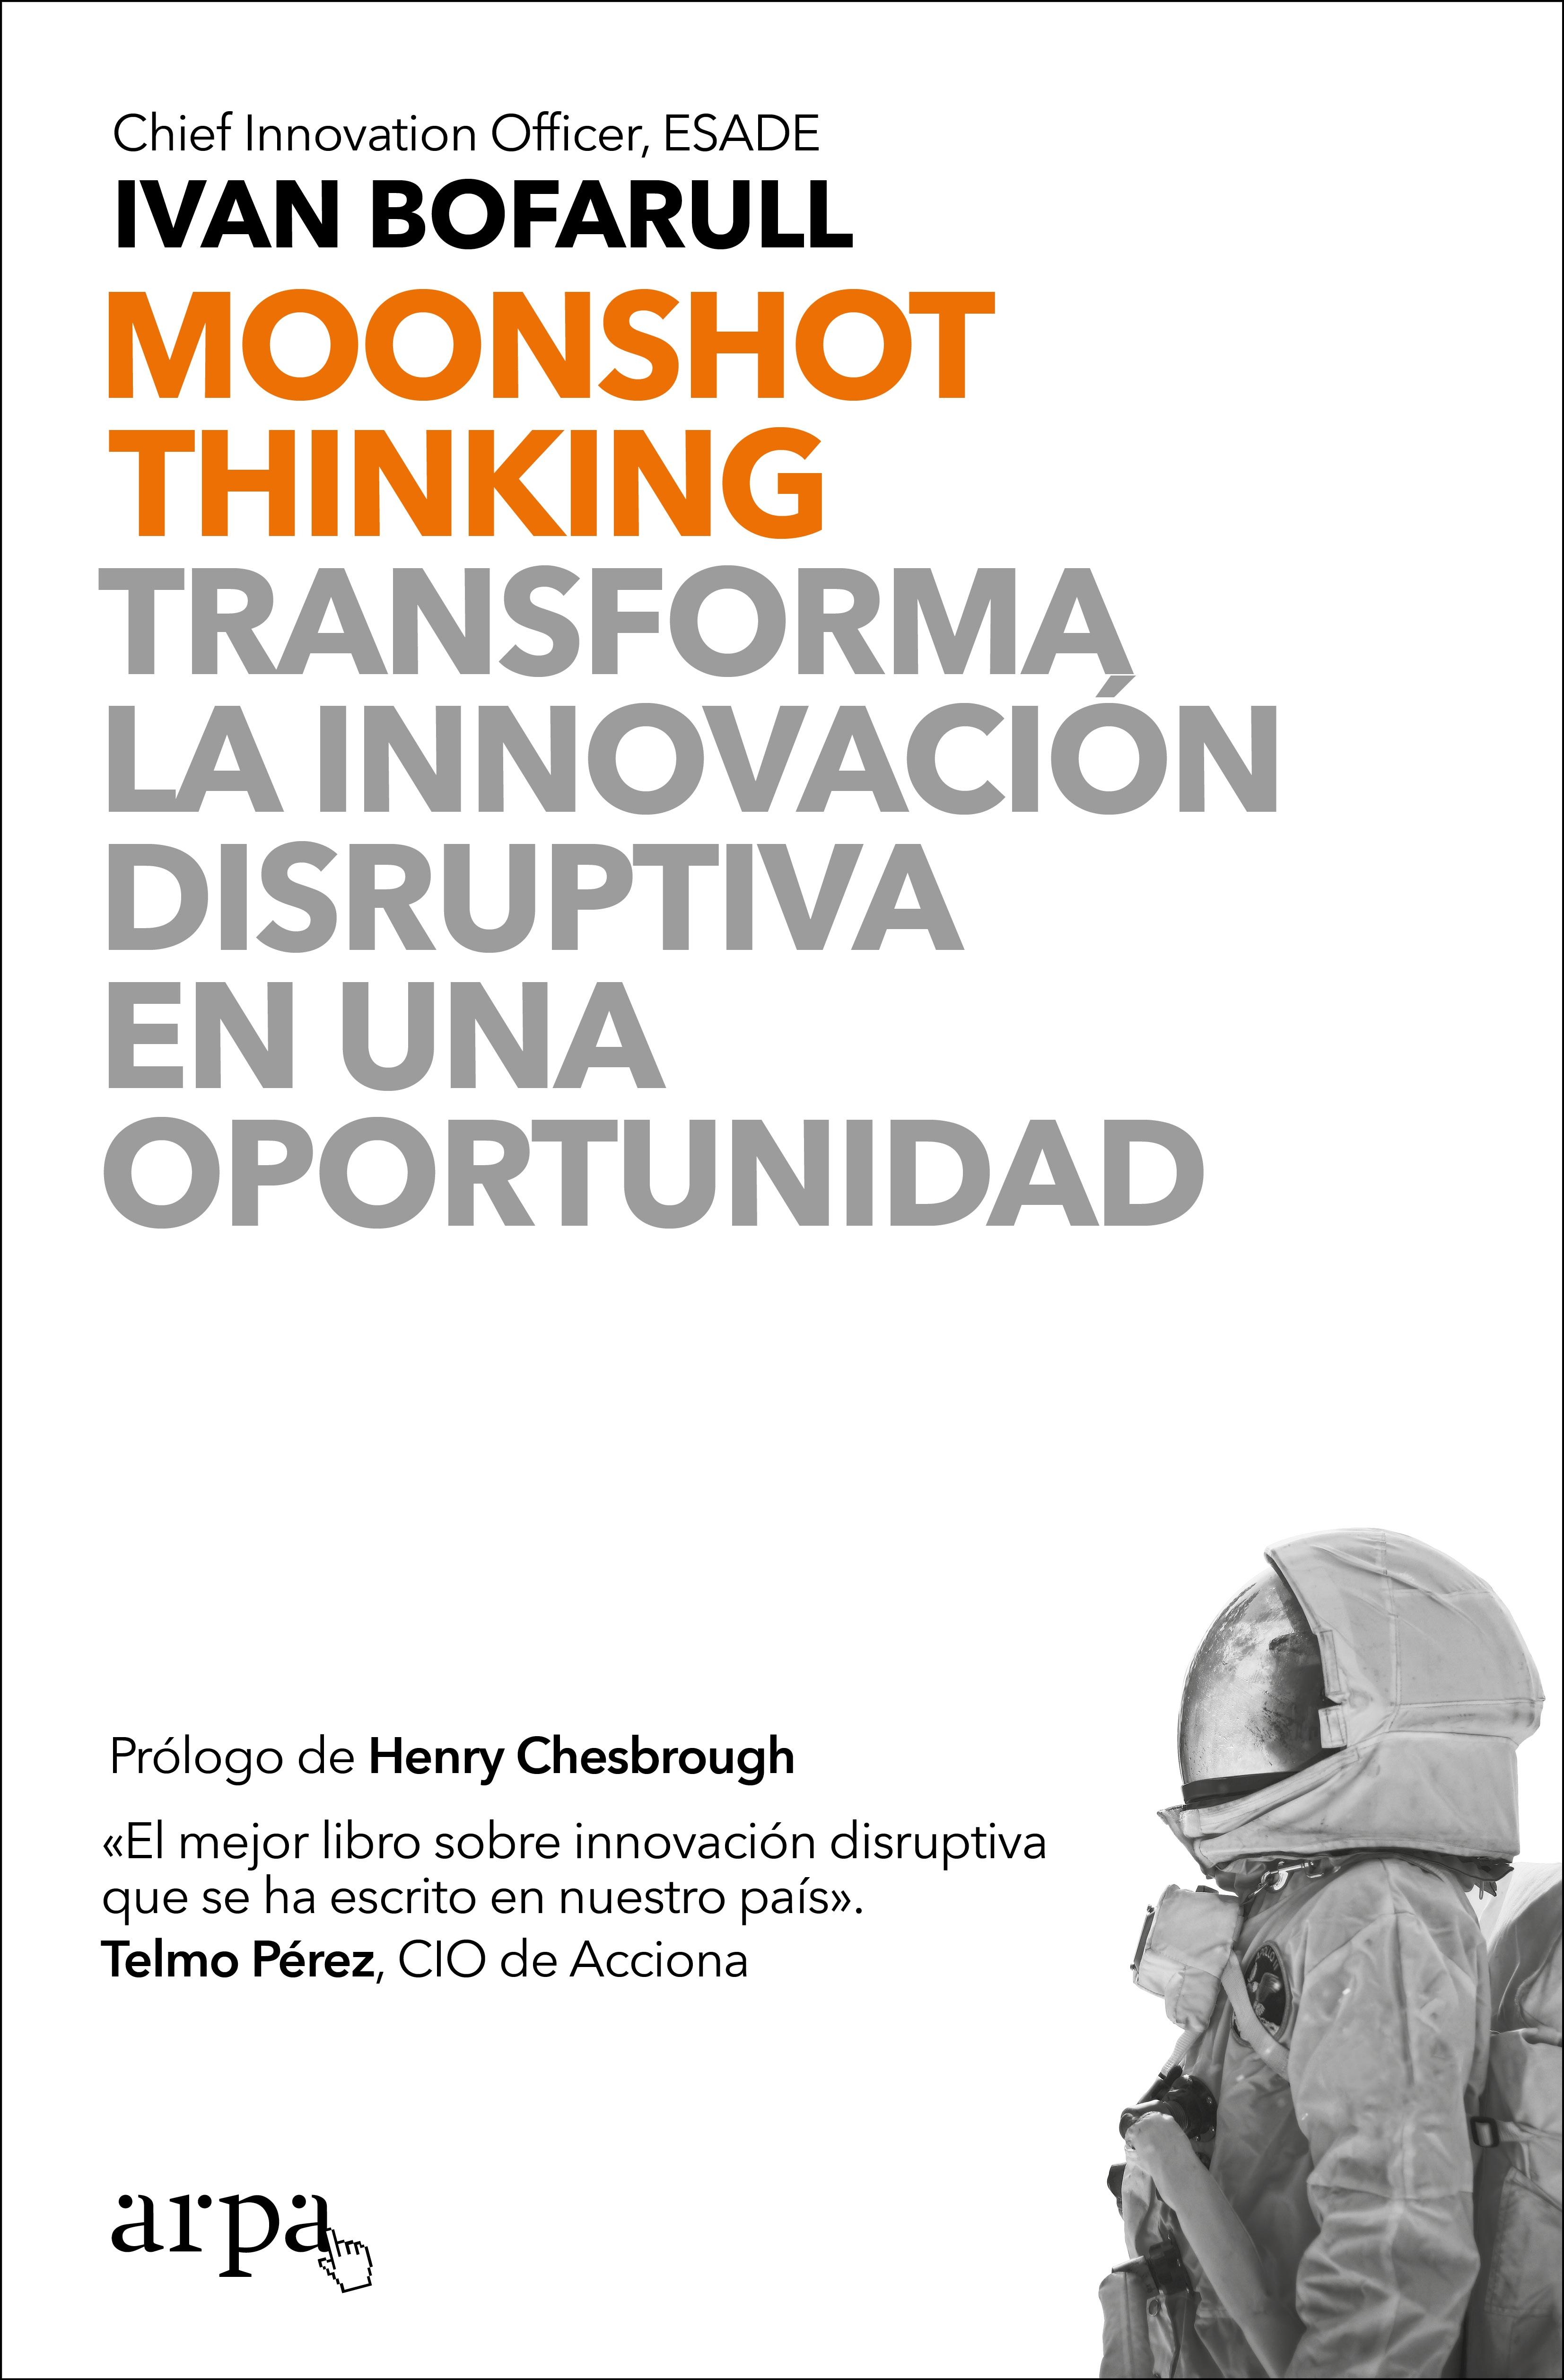 Moonshot Thinking "Transforma la innovación disruptiva en una oportunidad"